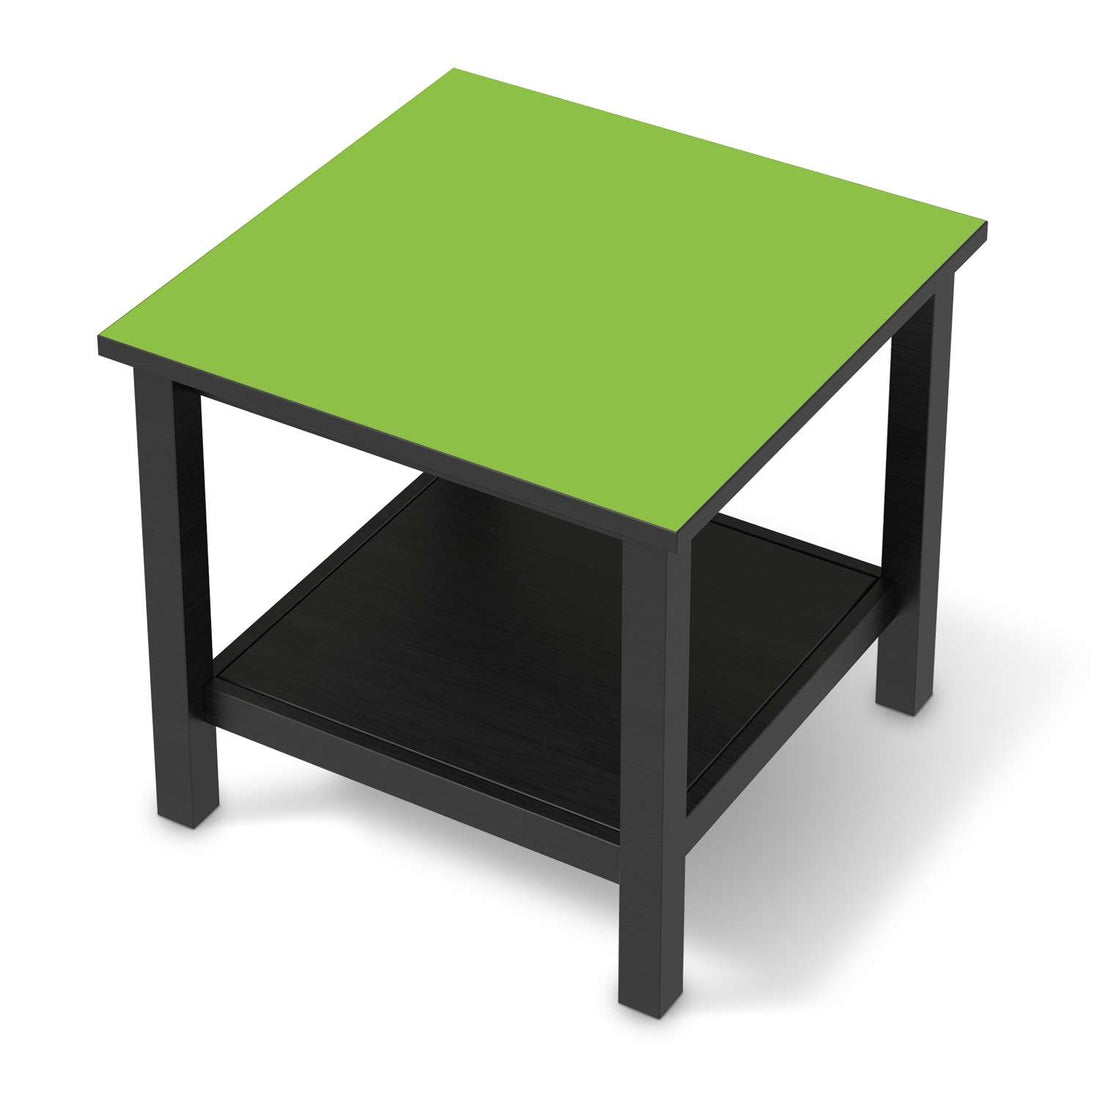 Möbel Klebefolie Hellgrün Dark - IKEA Hemnes Beistelltisch 55x55 cm - schwarz